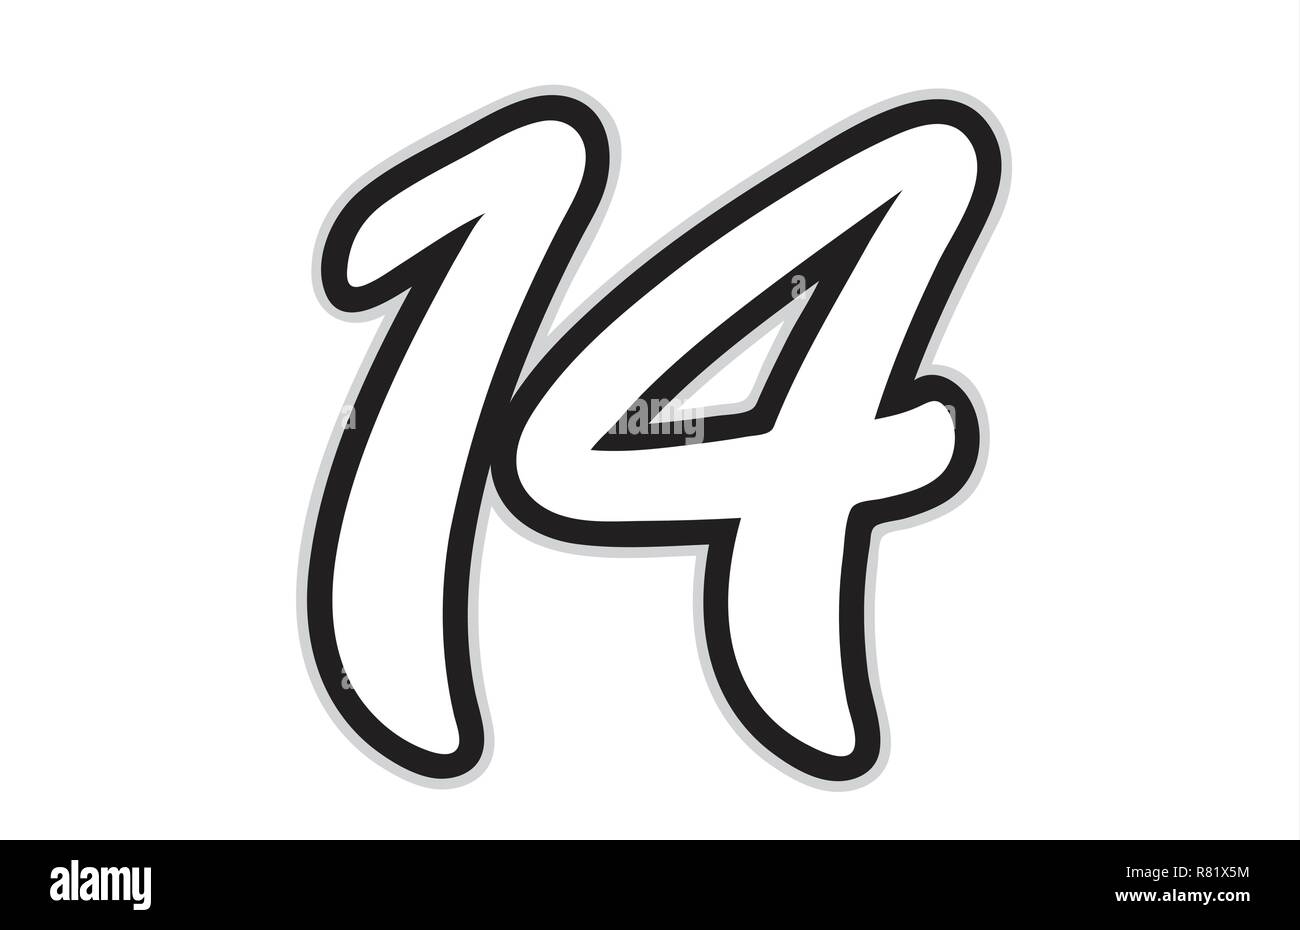 Conception de noir et blanc numéro 14 approprié comme un logo pour une entreprise ou de l'entreprise Illustration de Vecteur